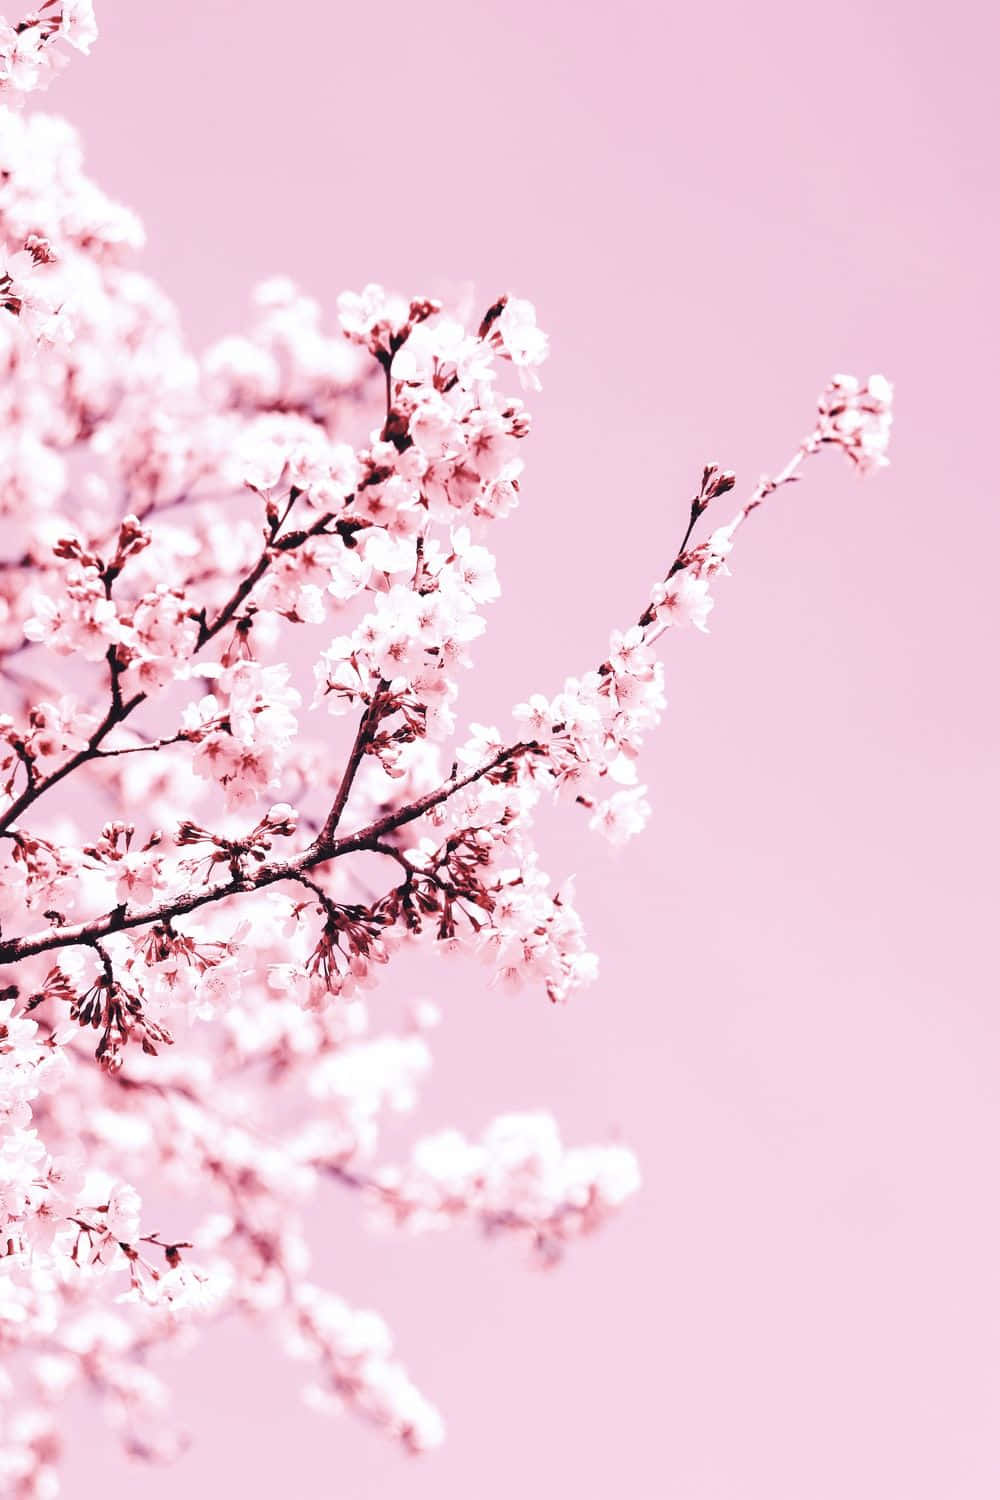 Einfaszinierender Blick Auf Die Natur - Ein Atemberaubend Schöner Rosa Kirschblütenbaum. Wallpaper